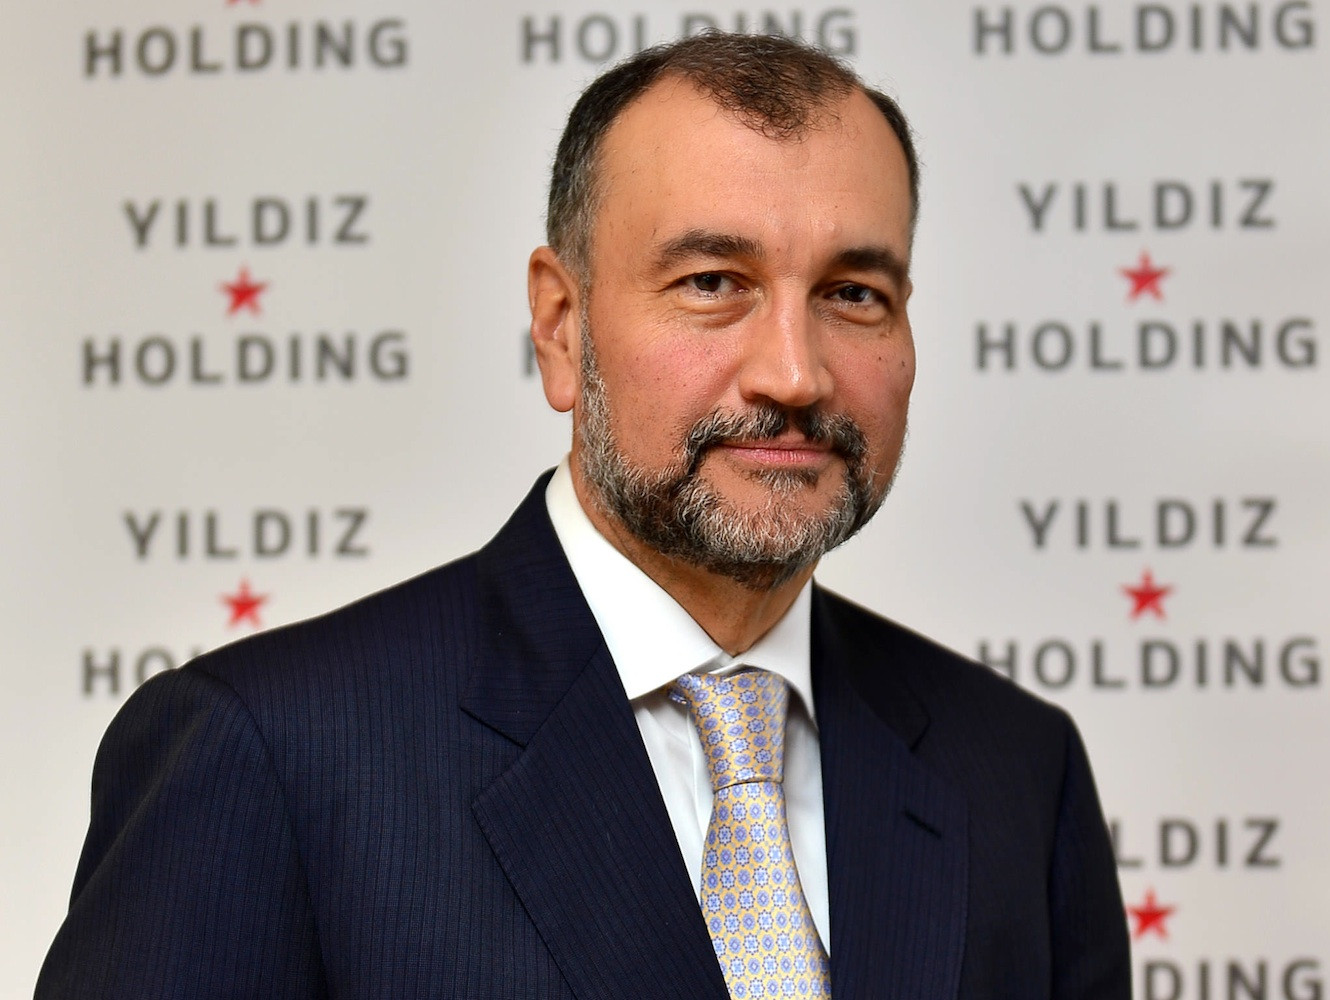 "Yıldız Holding borcunu 8 yıl vadeye yayacak"